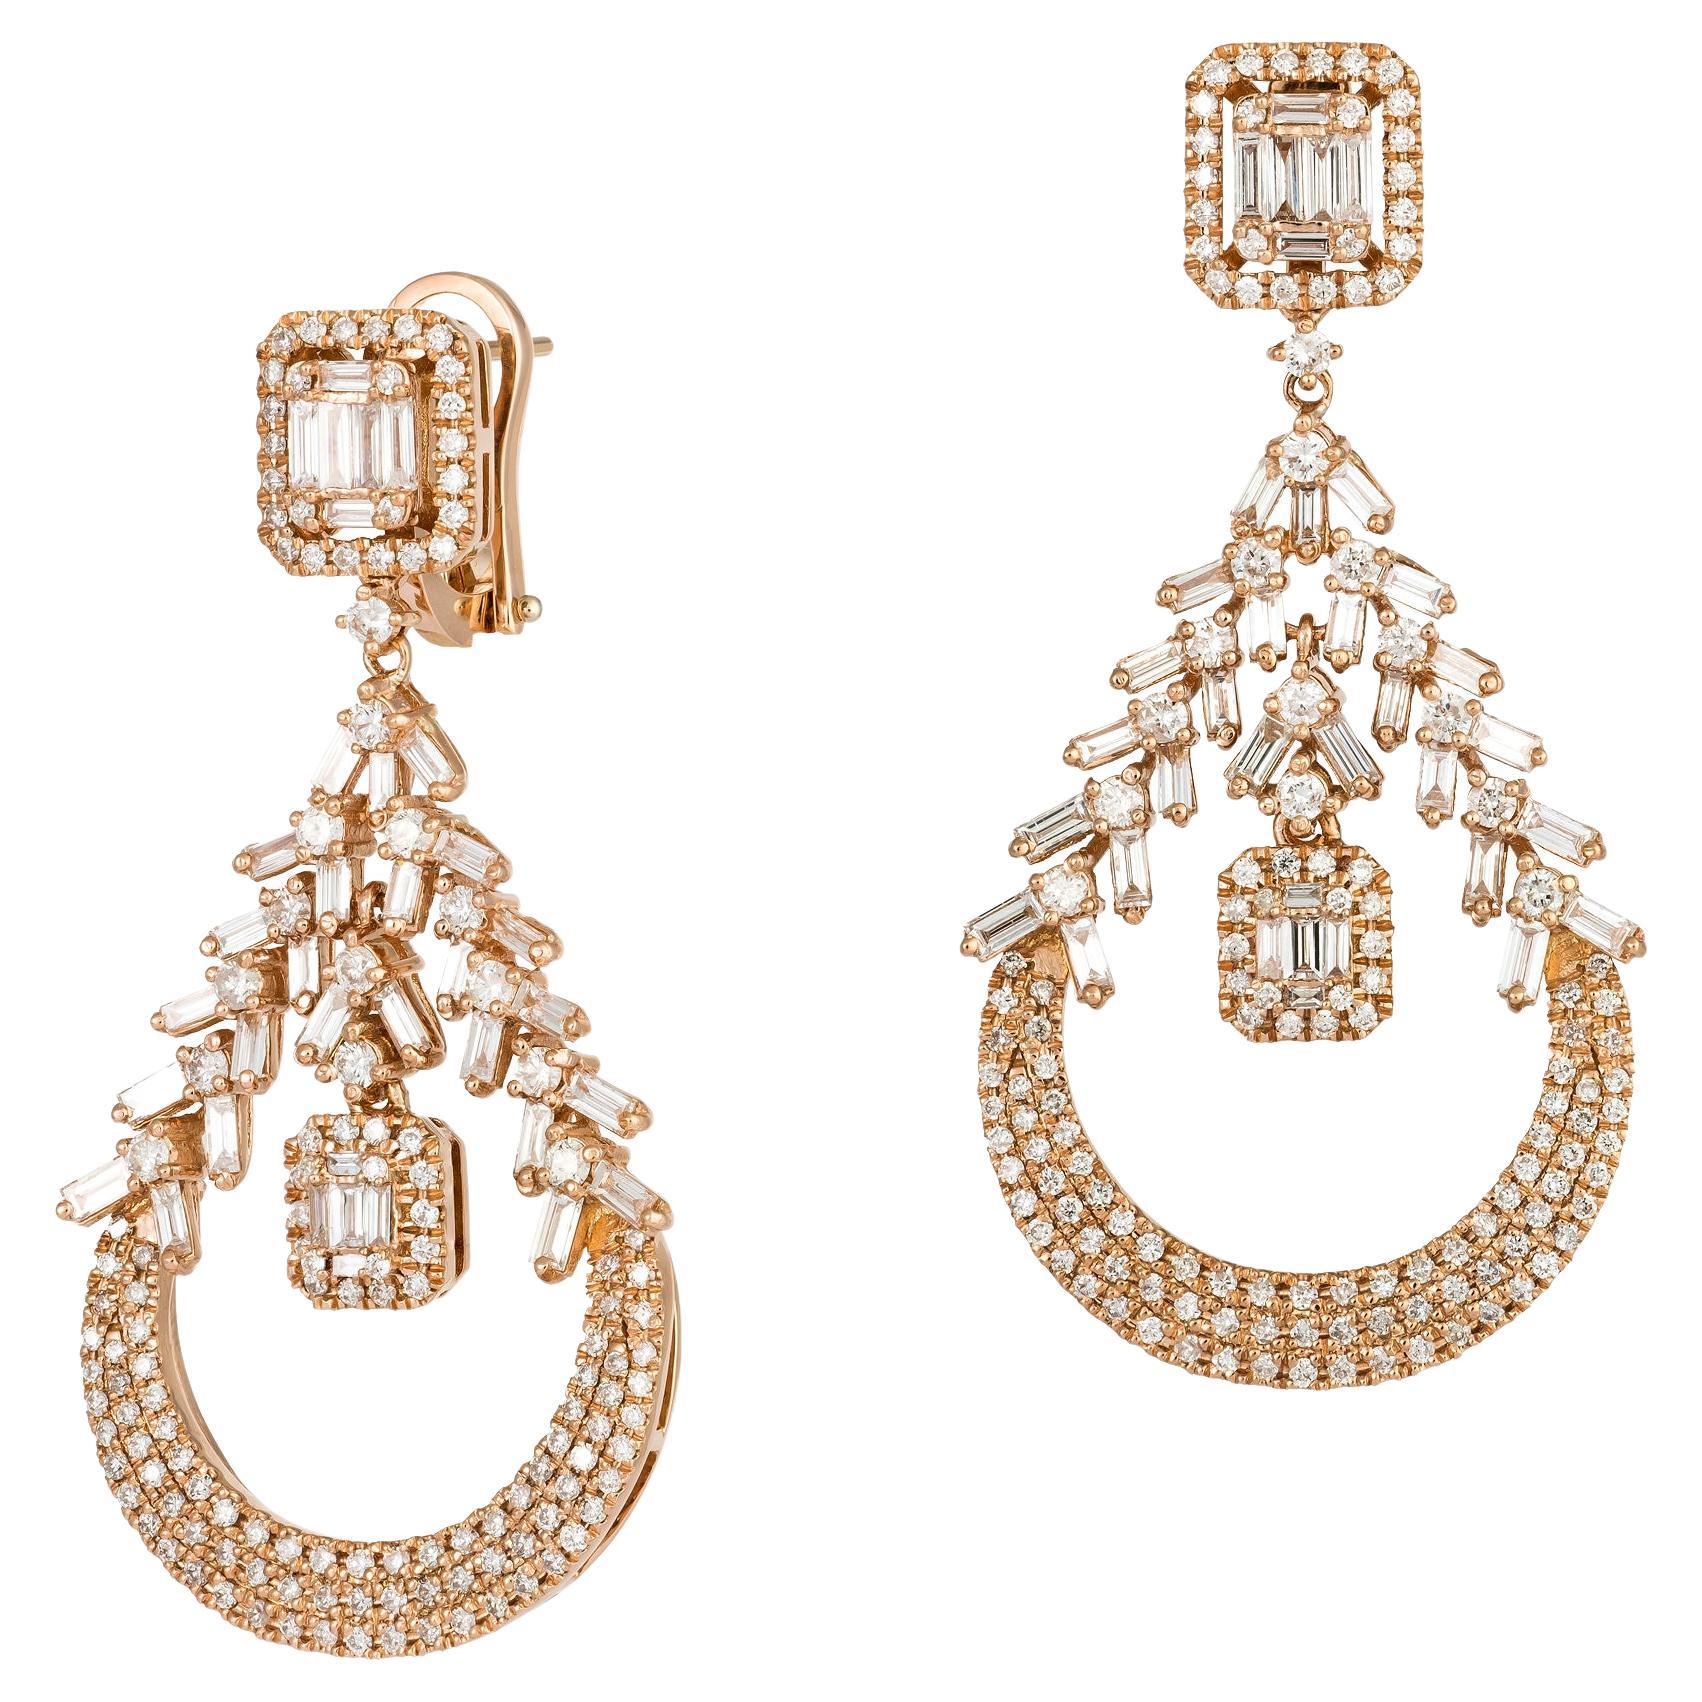 Modern White Pink Gold 18K Earrings Diamond For Her For Sale